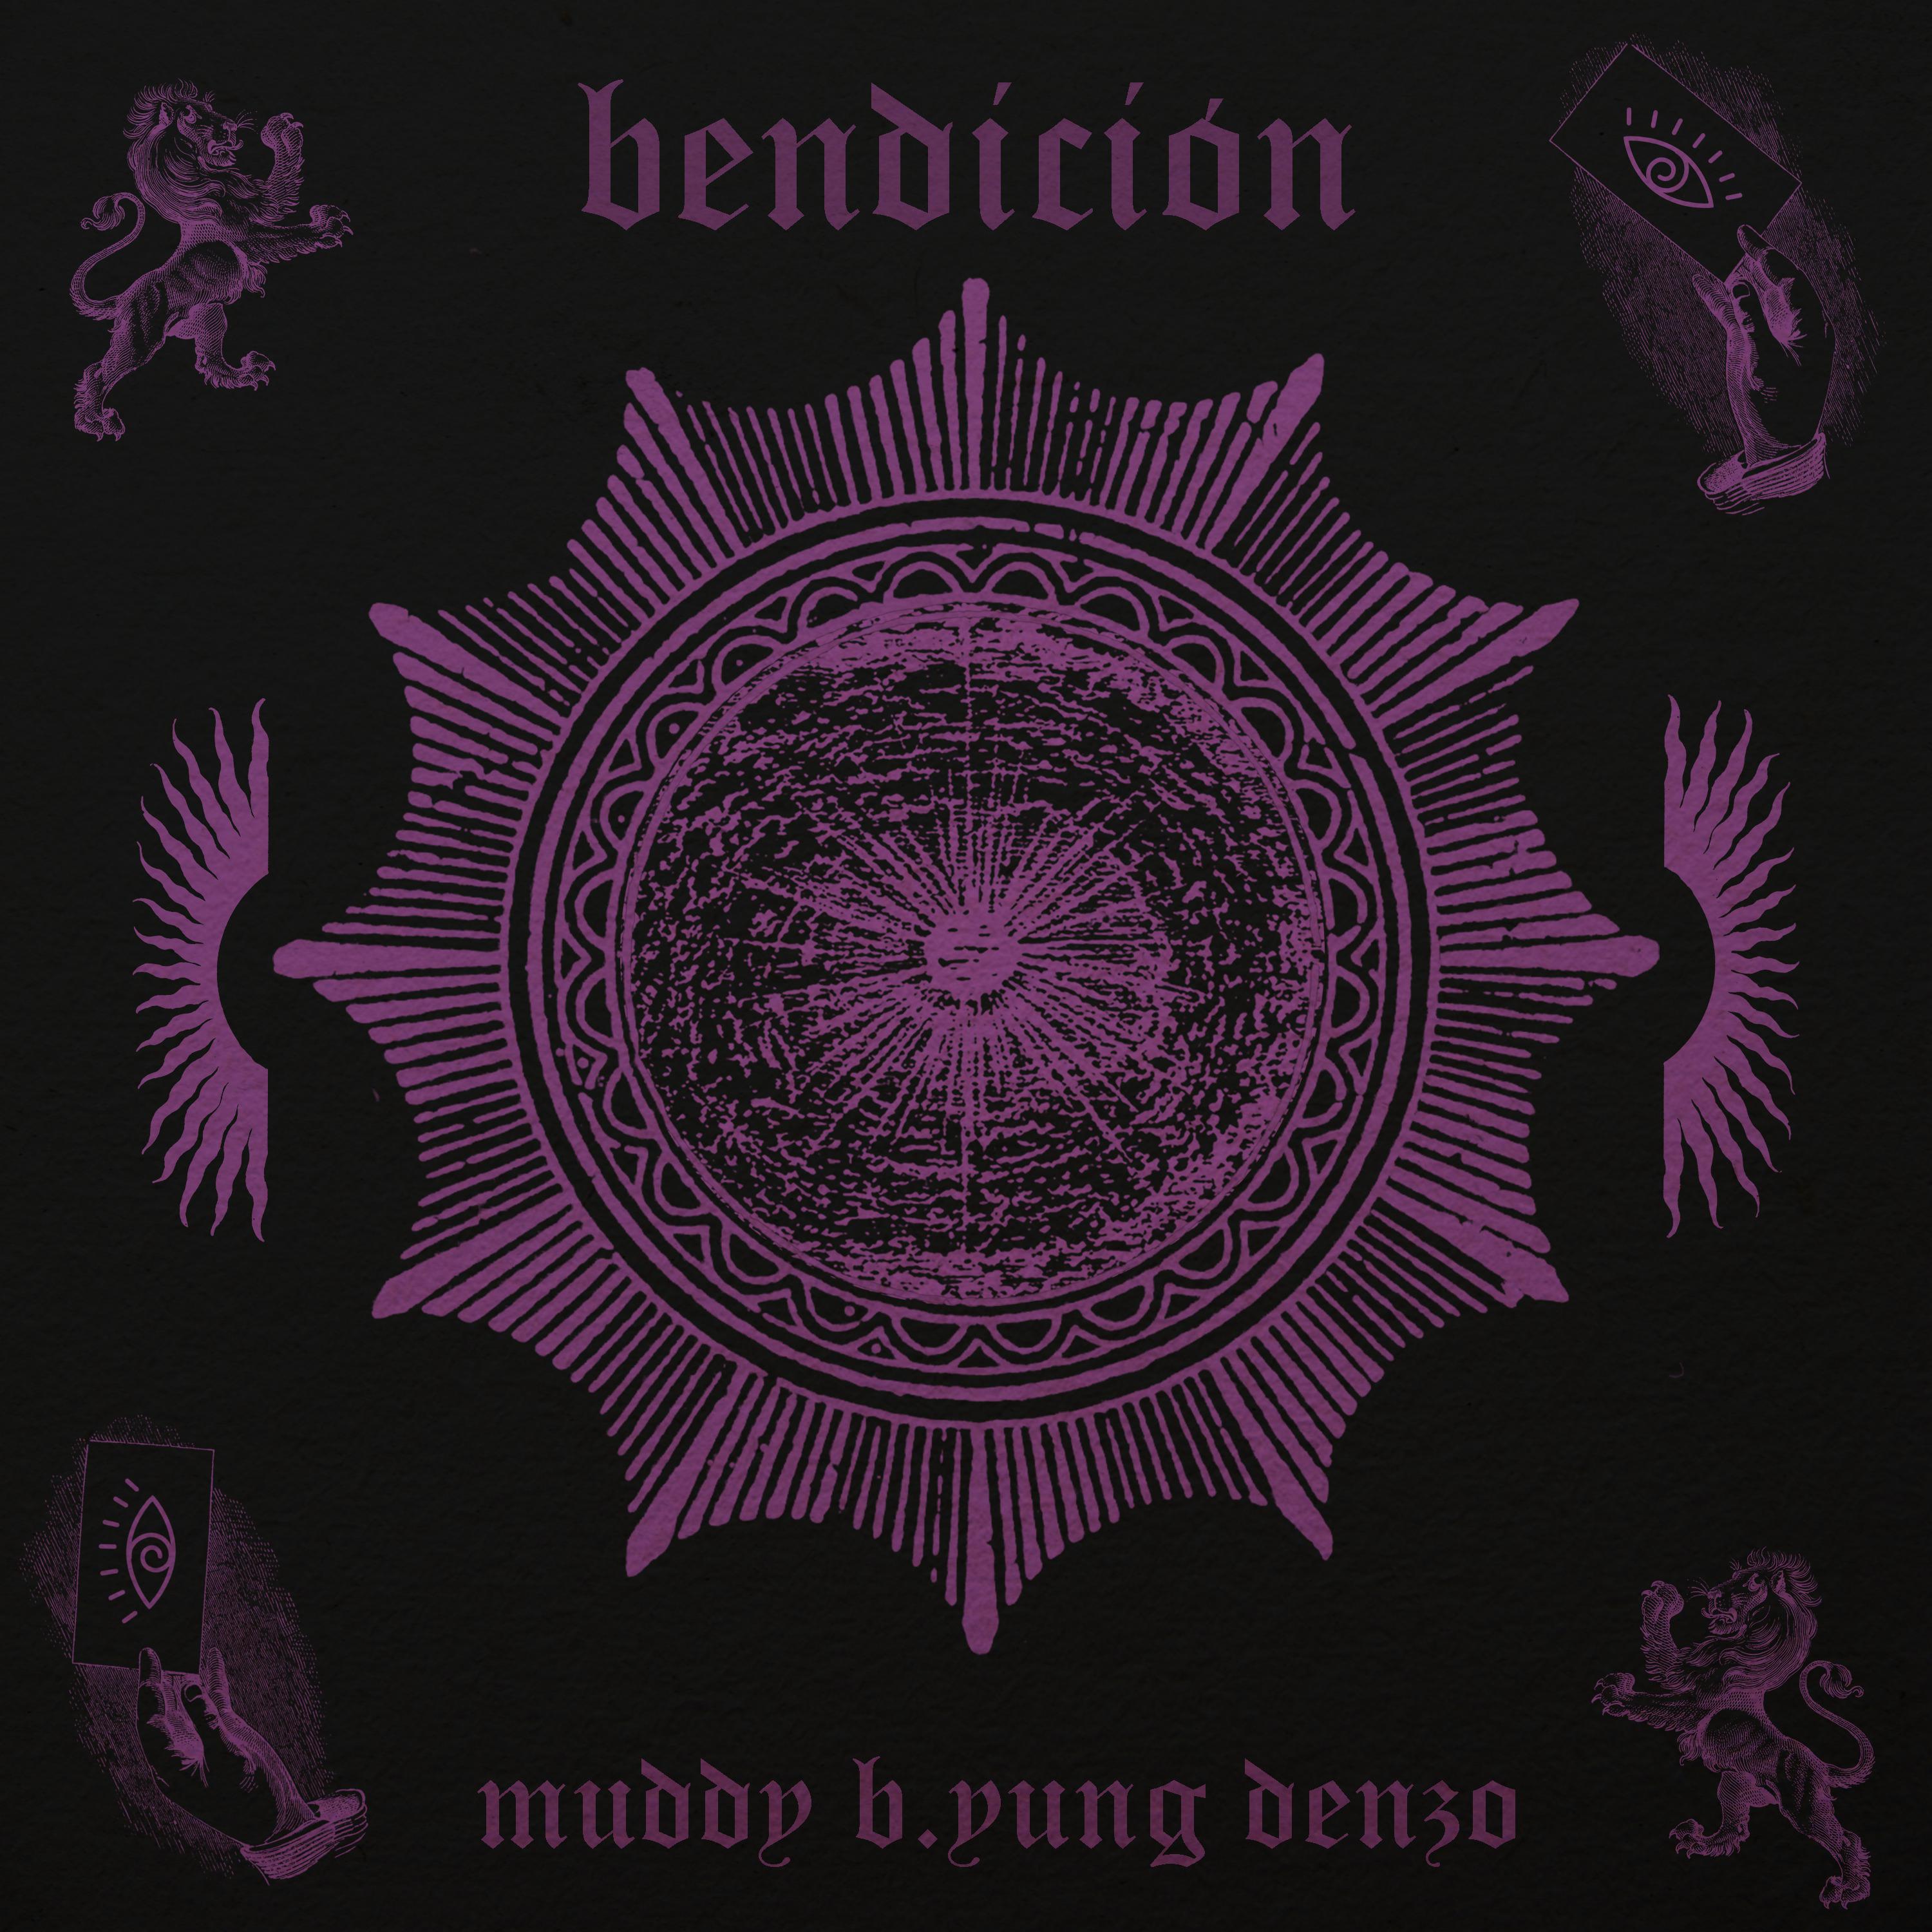 Постер альбома Bendición